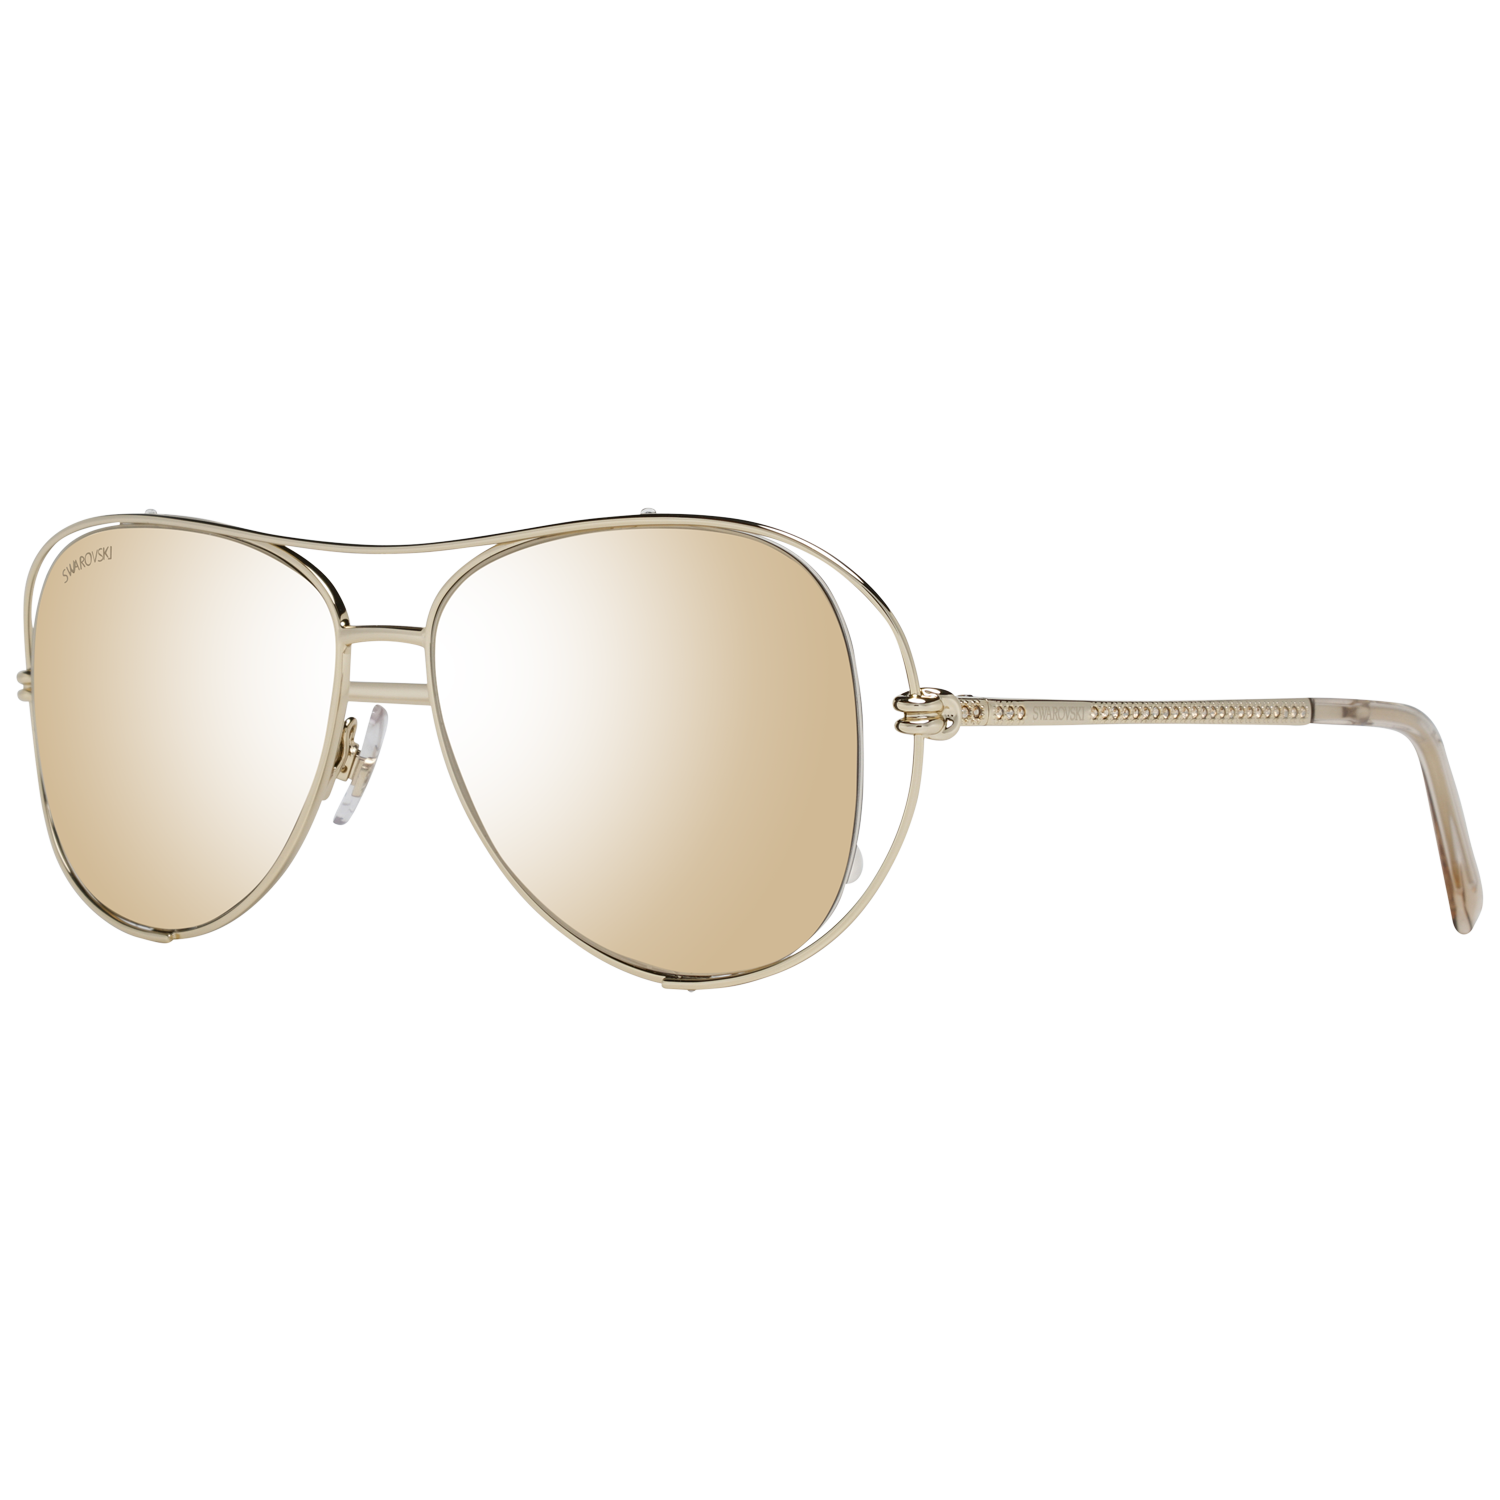 Dámské sluneční brýle Swarovski SK0231 32G 55